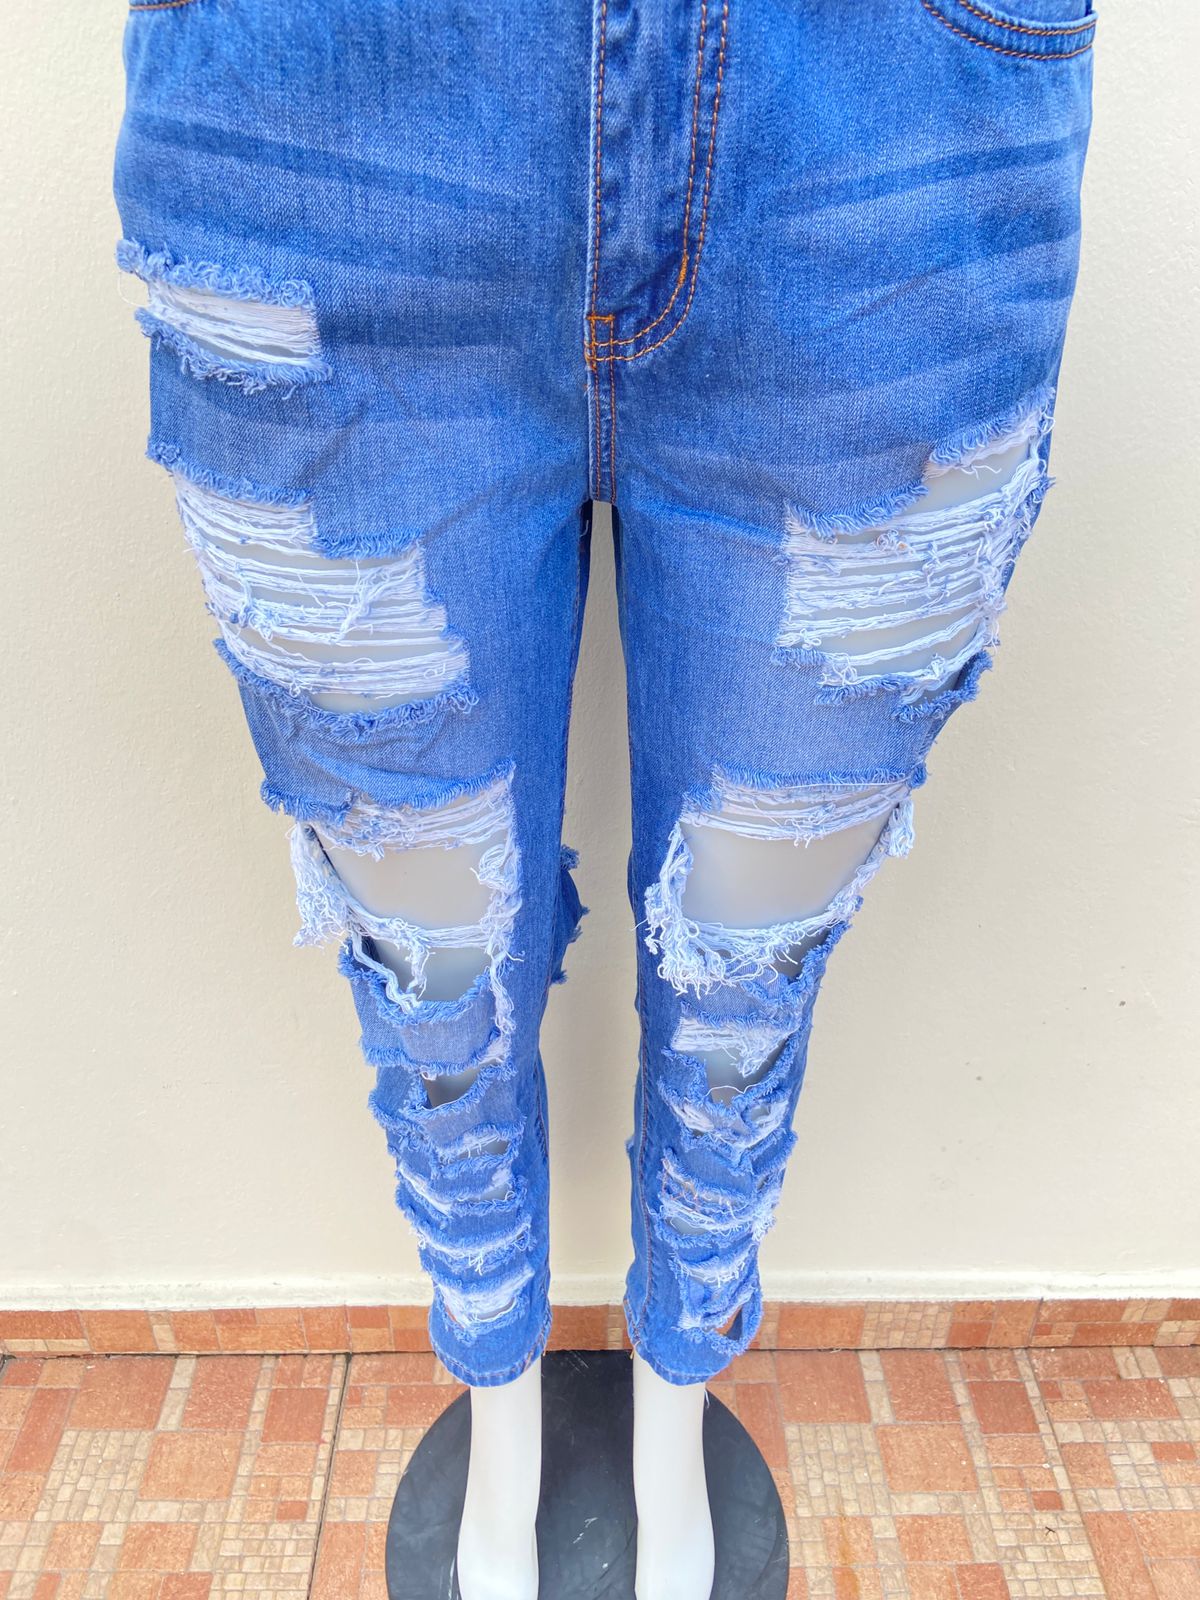 Pantalón jean Fashion nova original color azul varios rasgados